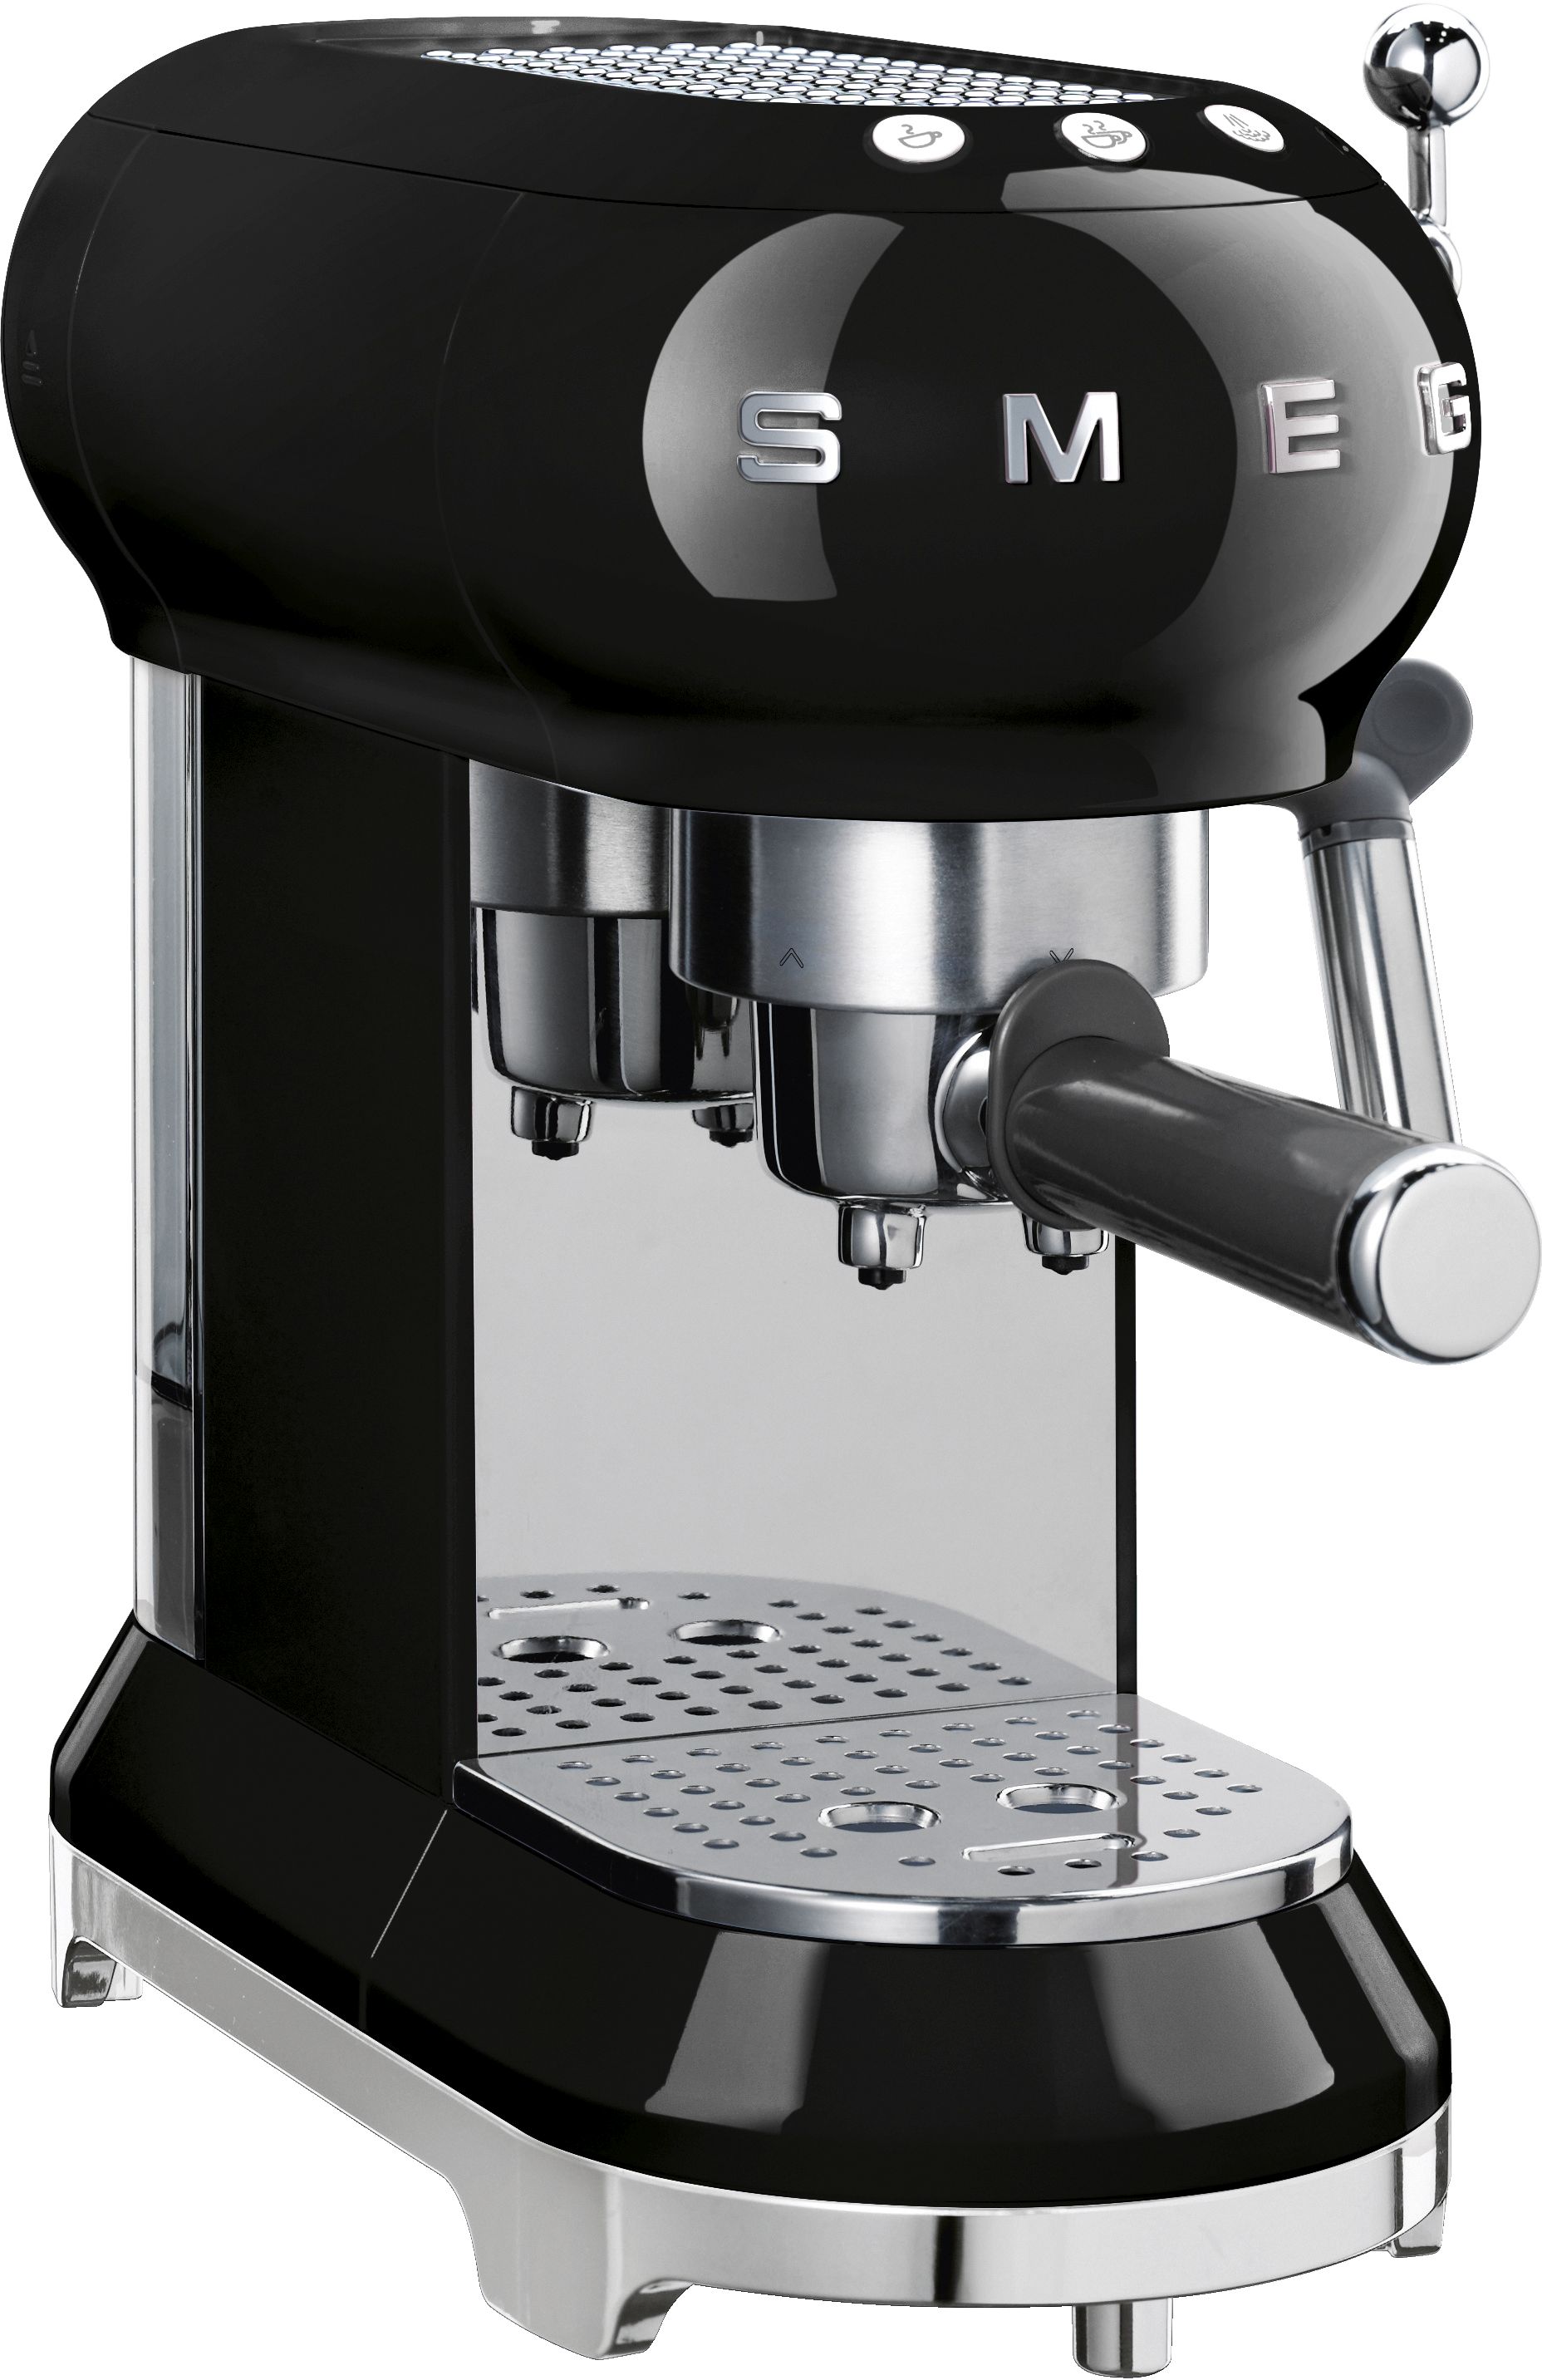 SMEG Espressomachine Zwart Online Kopen?